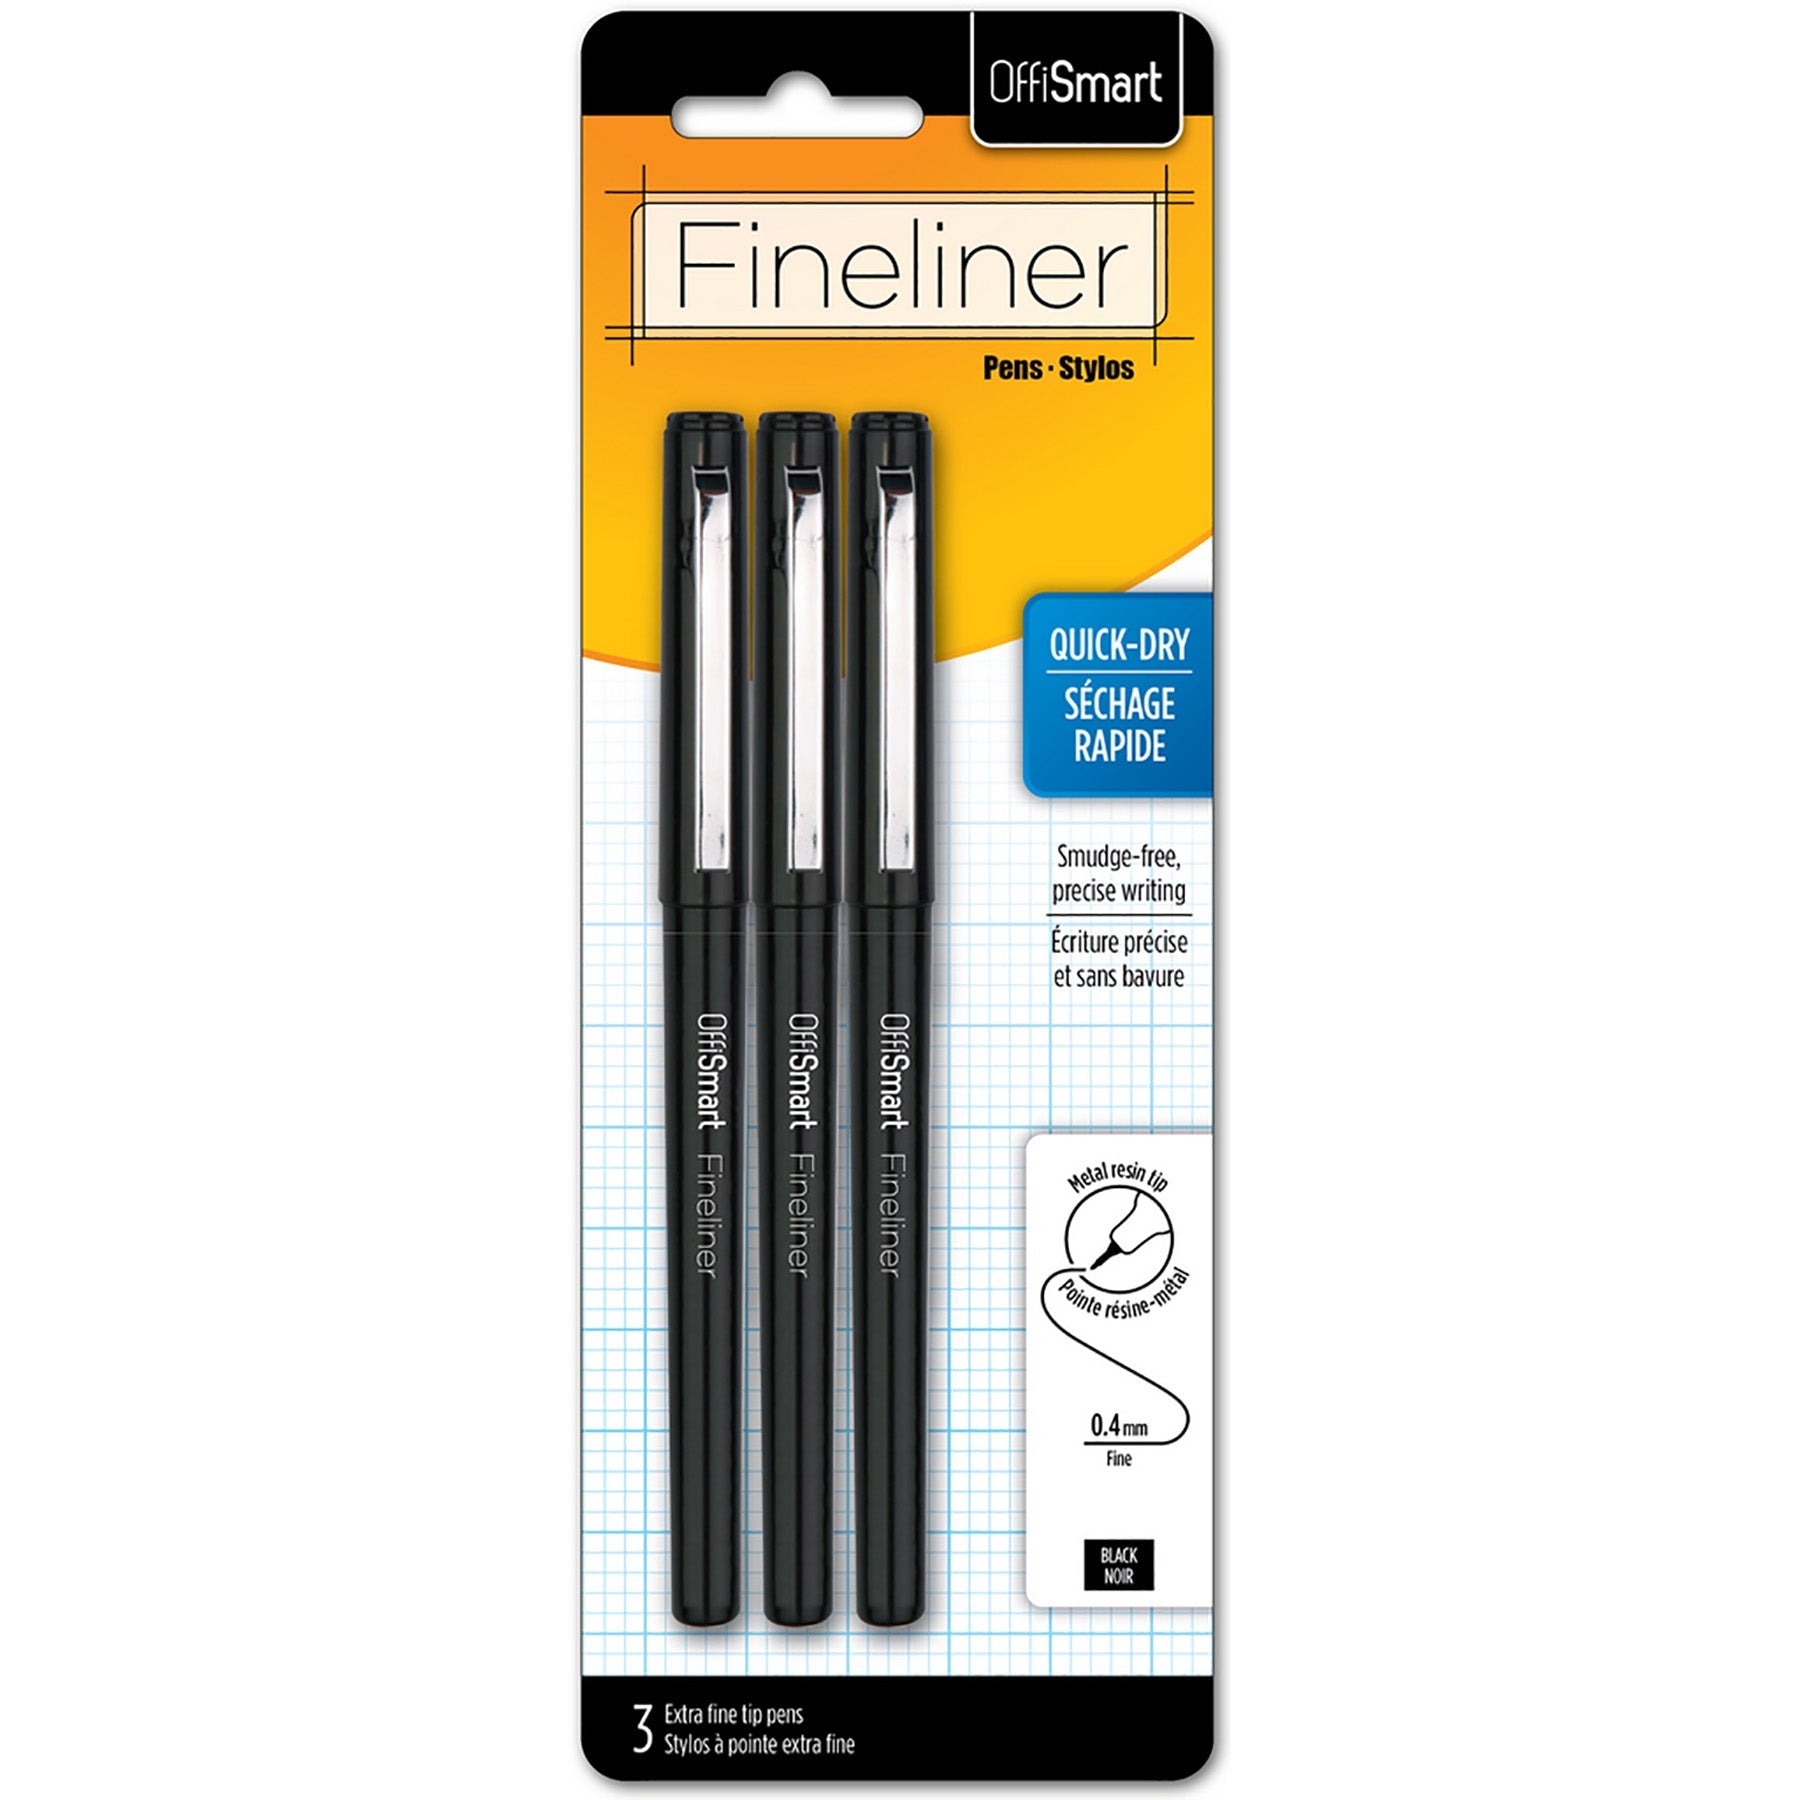 Offismart 3 Fineliners Black Ink  0.4mm